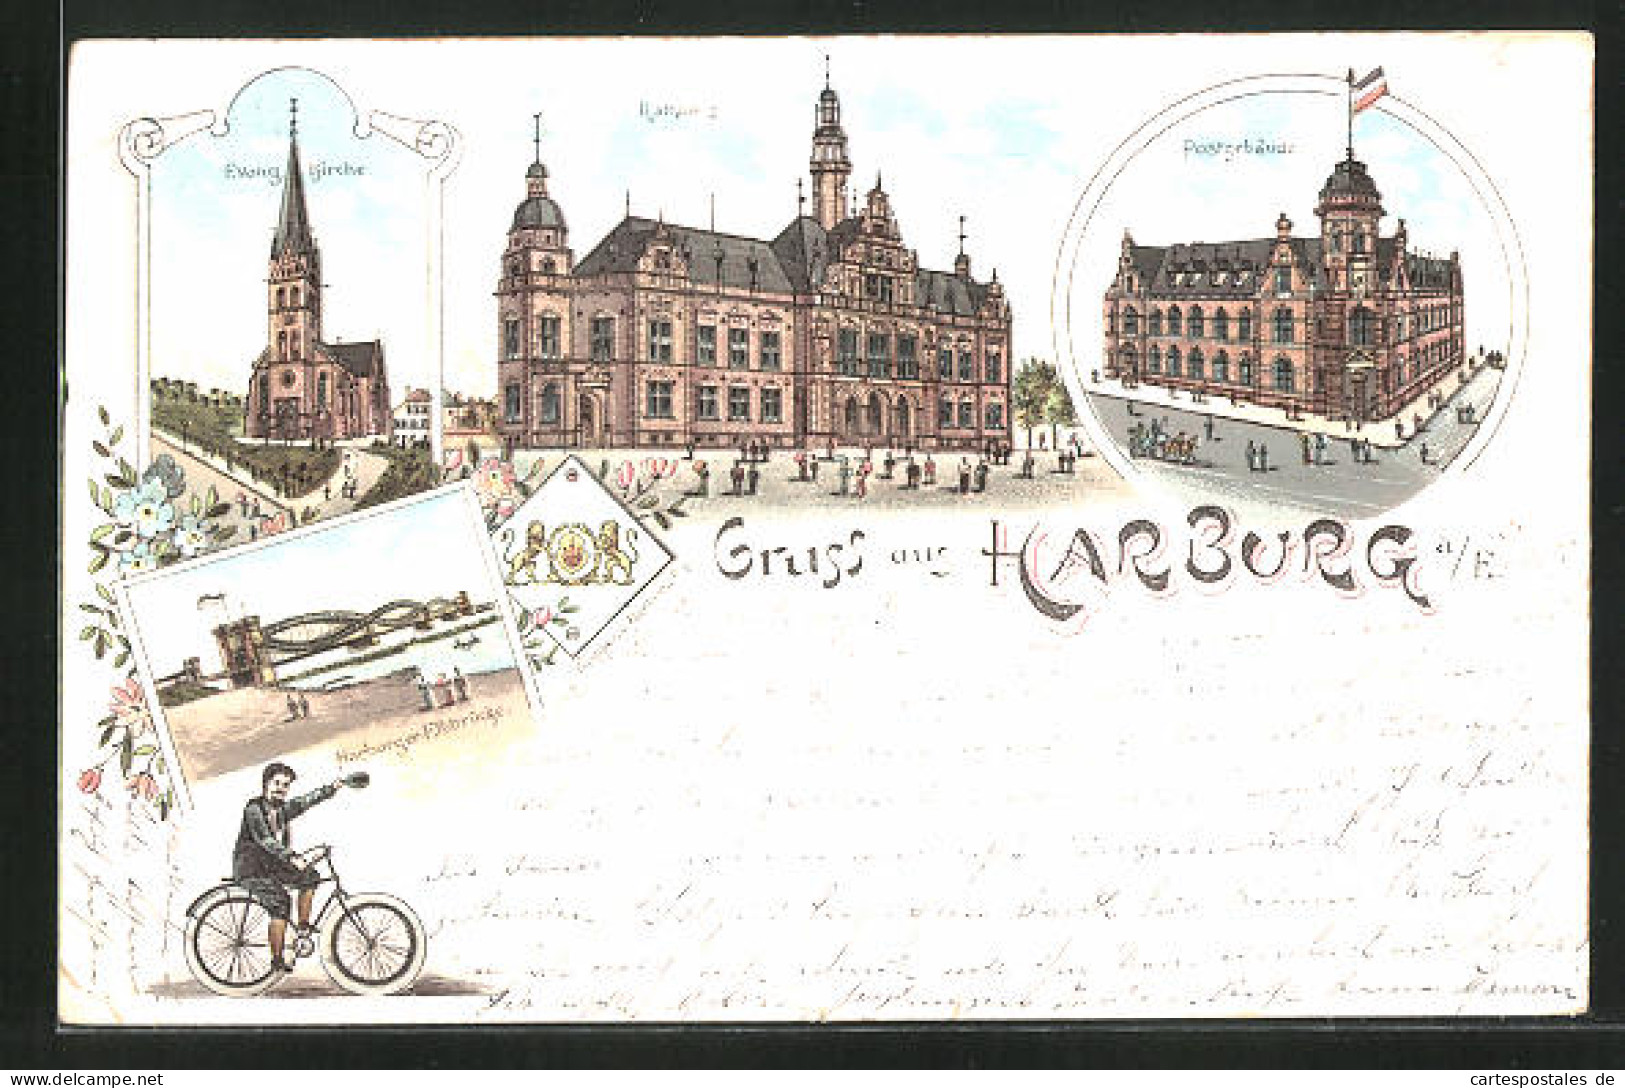 Lithographie Hamburg-Harburg, Postgebäude, Elbbrücke, Rathhaus, Evangelische Kirche  - Harburg